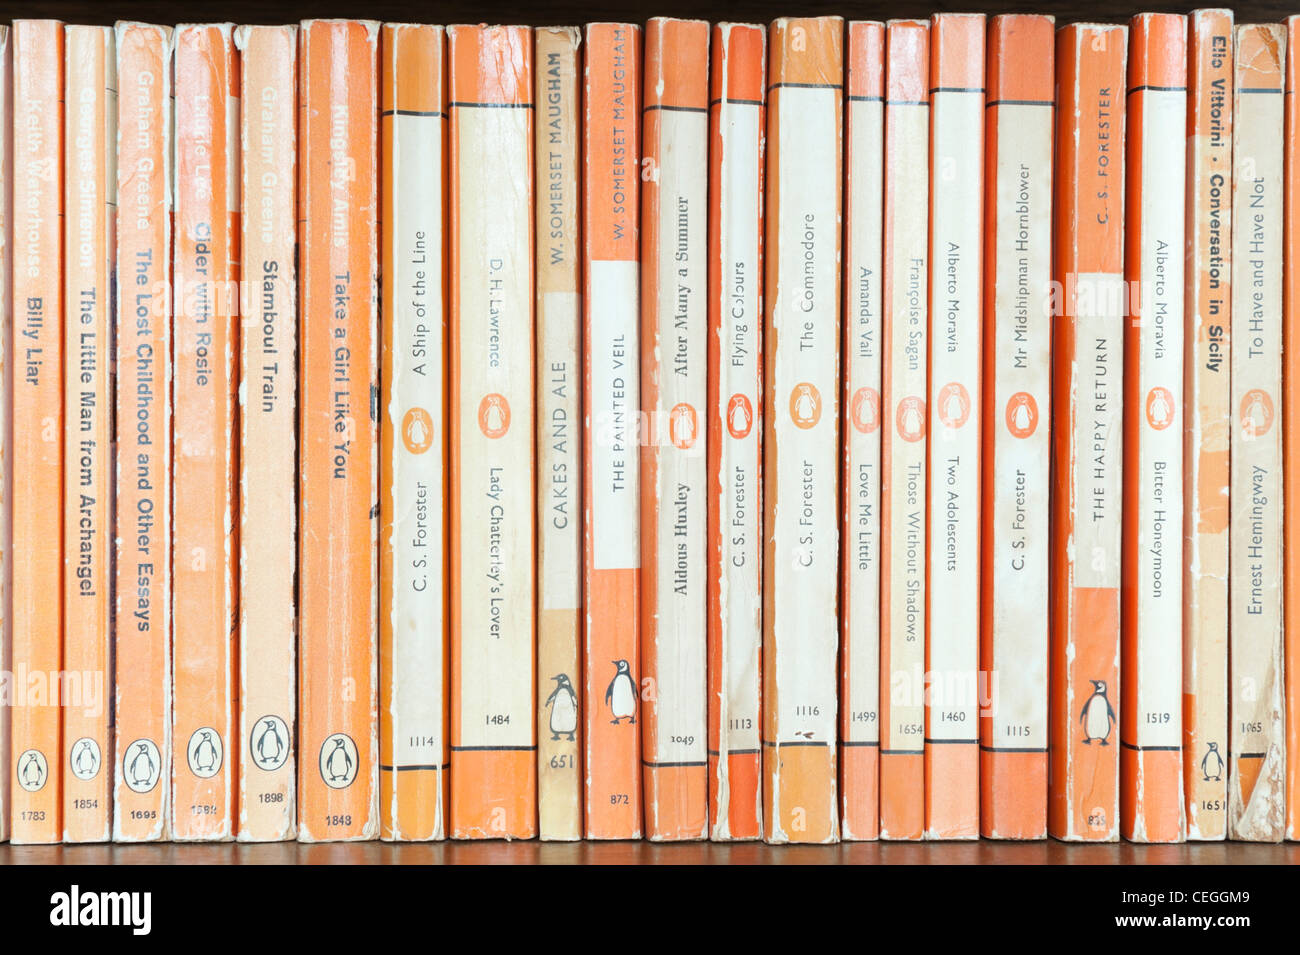 Vintage paperback romans publiés par Penguin Books - fin des années 40 à fin des années 1960 Banque D'Images